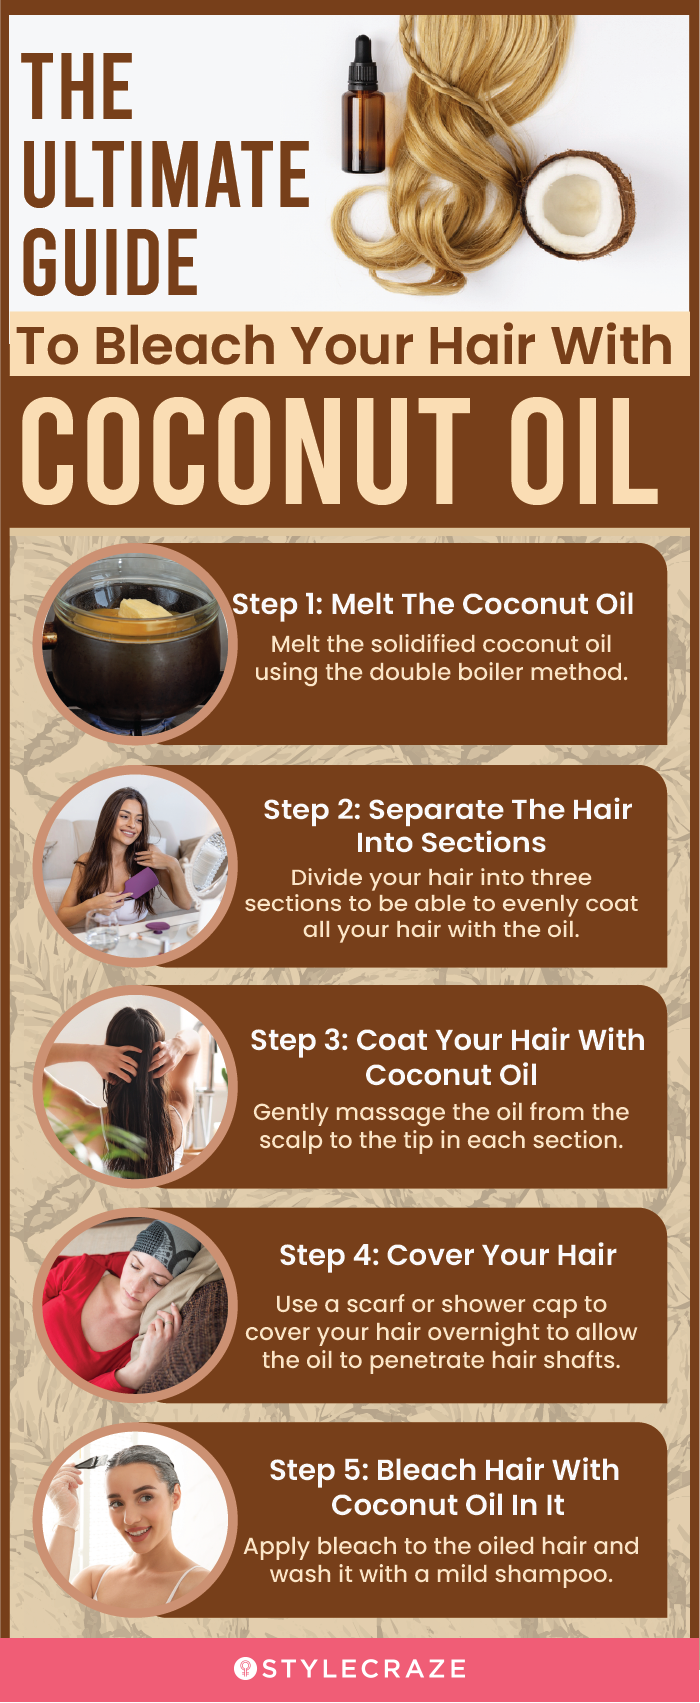 Oiling scalp everyday + oiling scalp everyday for hair growth. - YouTube